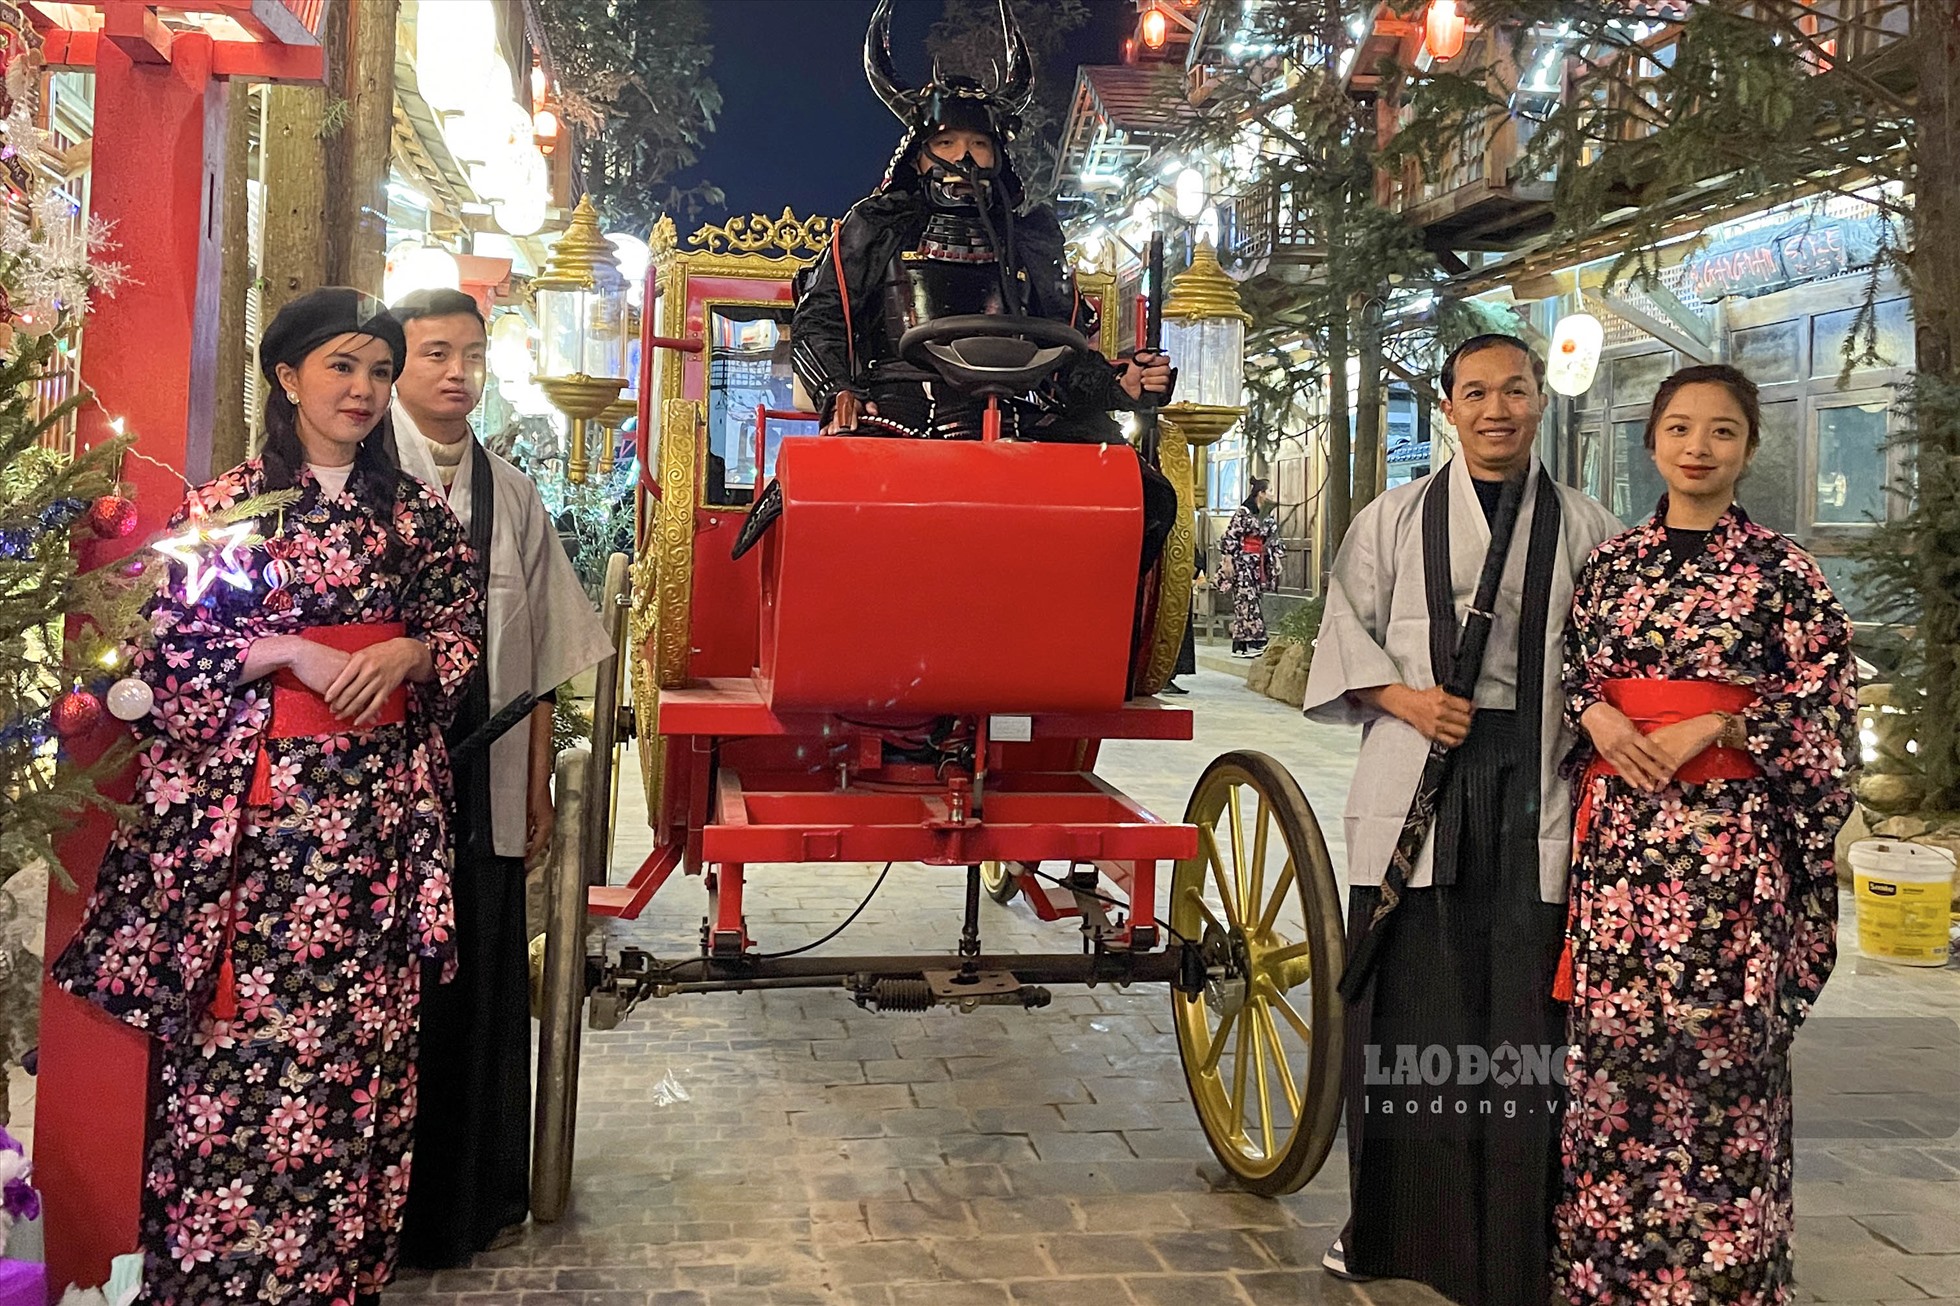 Đồng thời, Phố đi bộ còn có một khu vực đường phố, nhà hàng và cảnh quanh mang phong cách đặc trưng của Nhật Bản. Đây là điểm ghé thăm thu hút rất nhiều bạn trẻ.